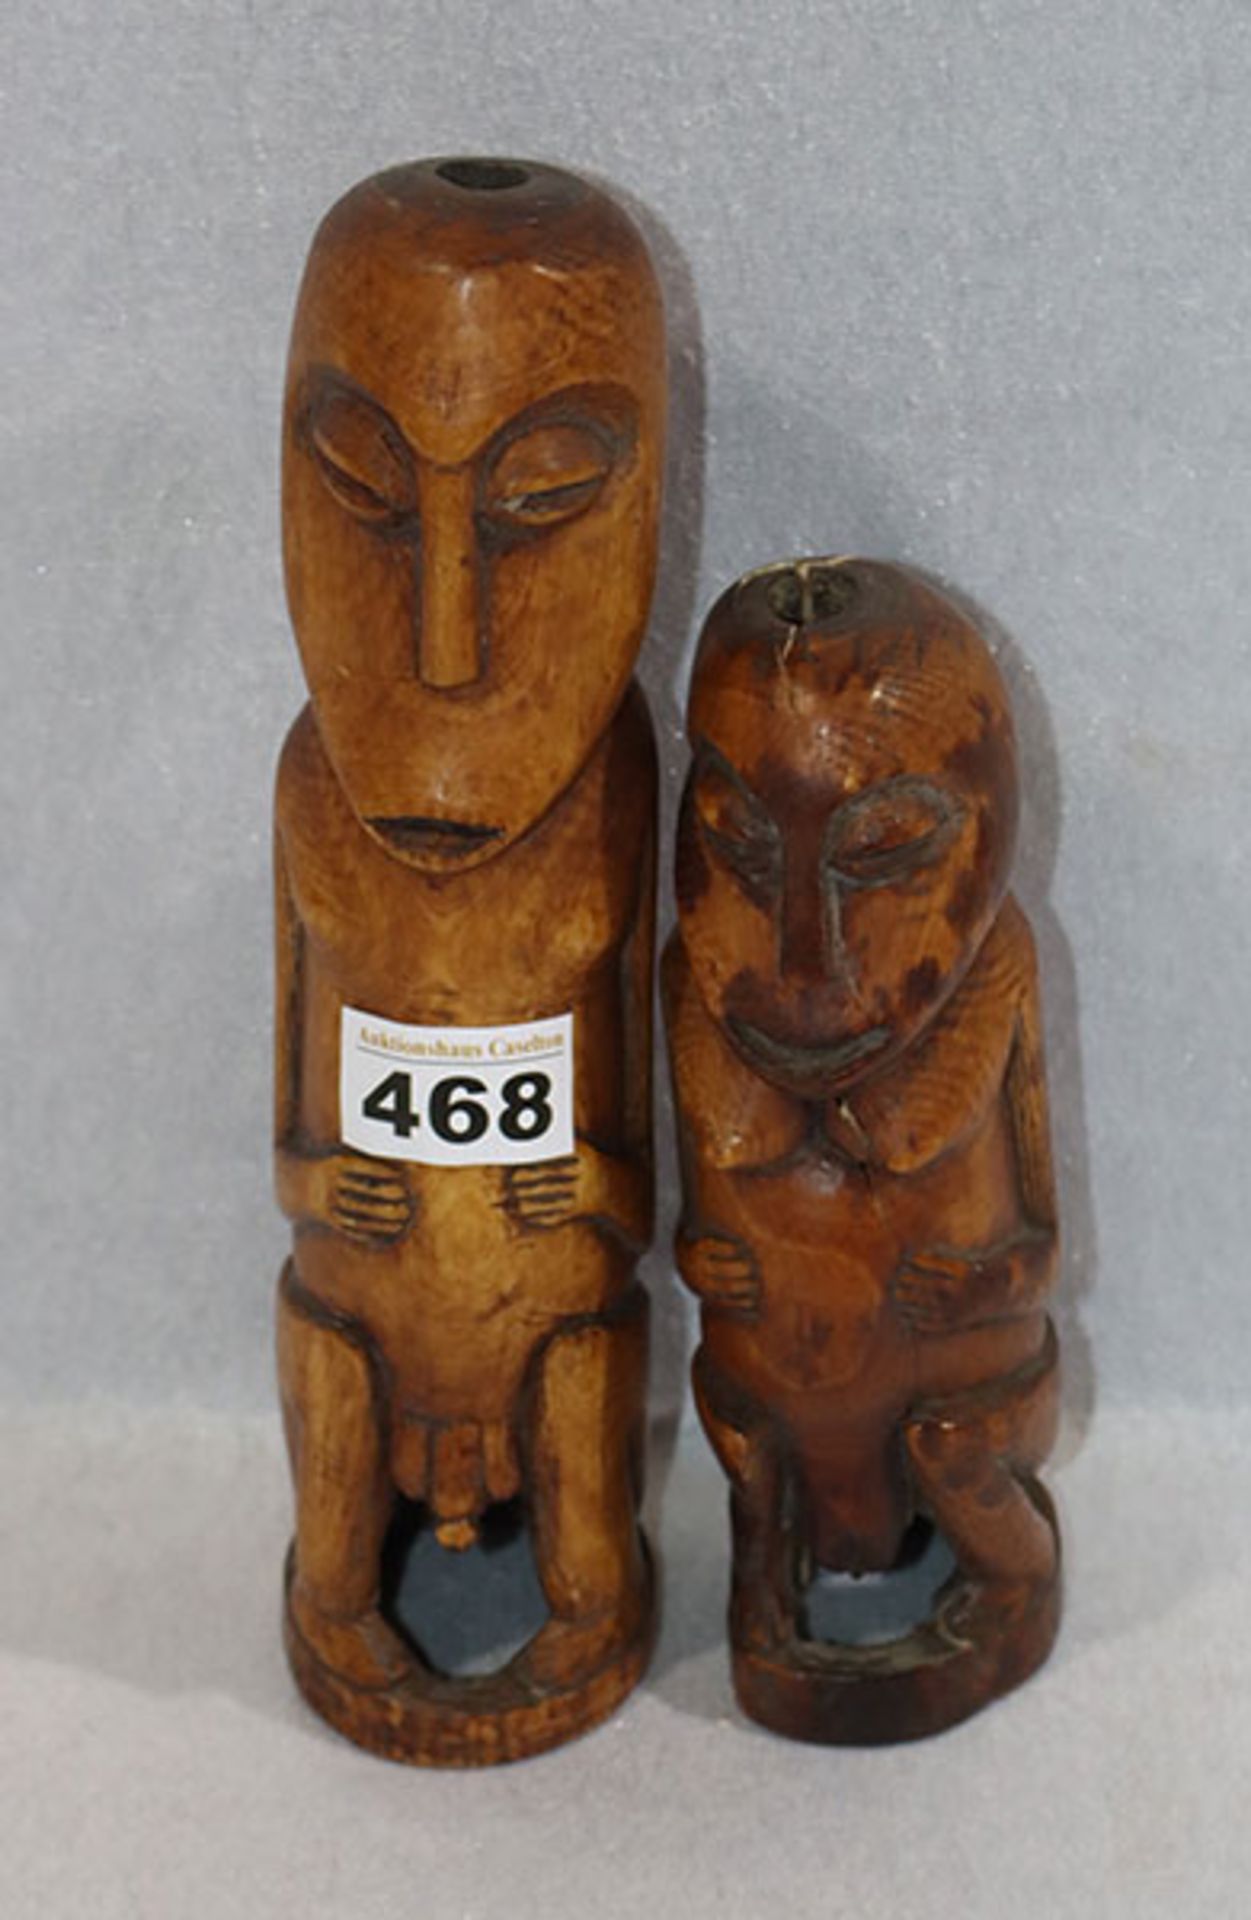 2 Holzfiguren, afrikanisch ?, H 18/25 cm, teils beschädigt, Altersspuren